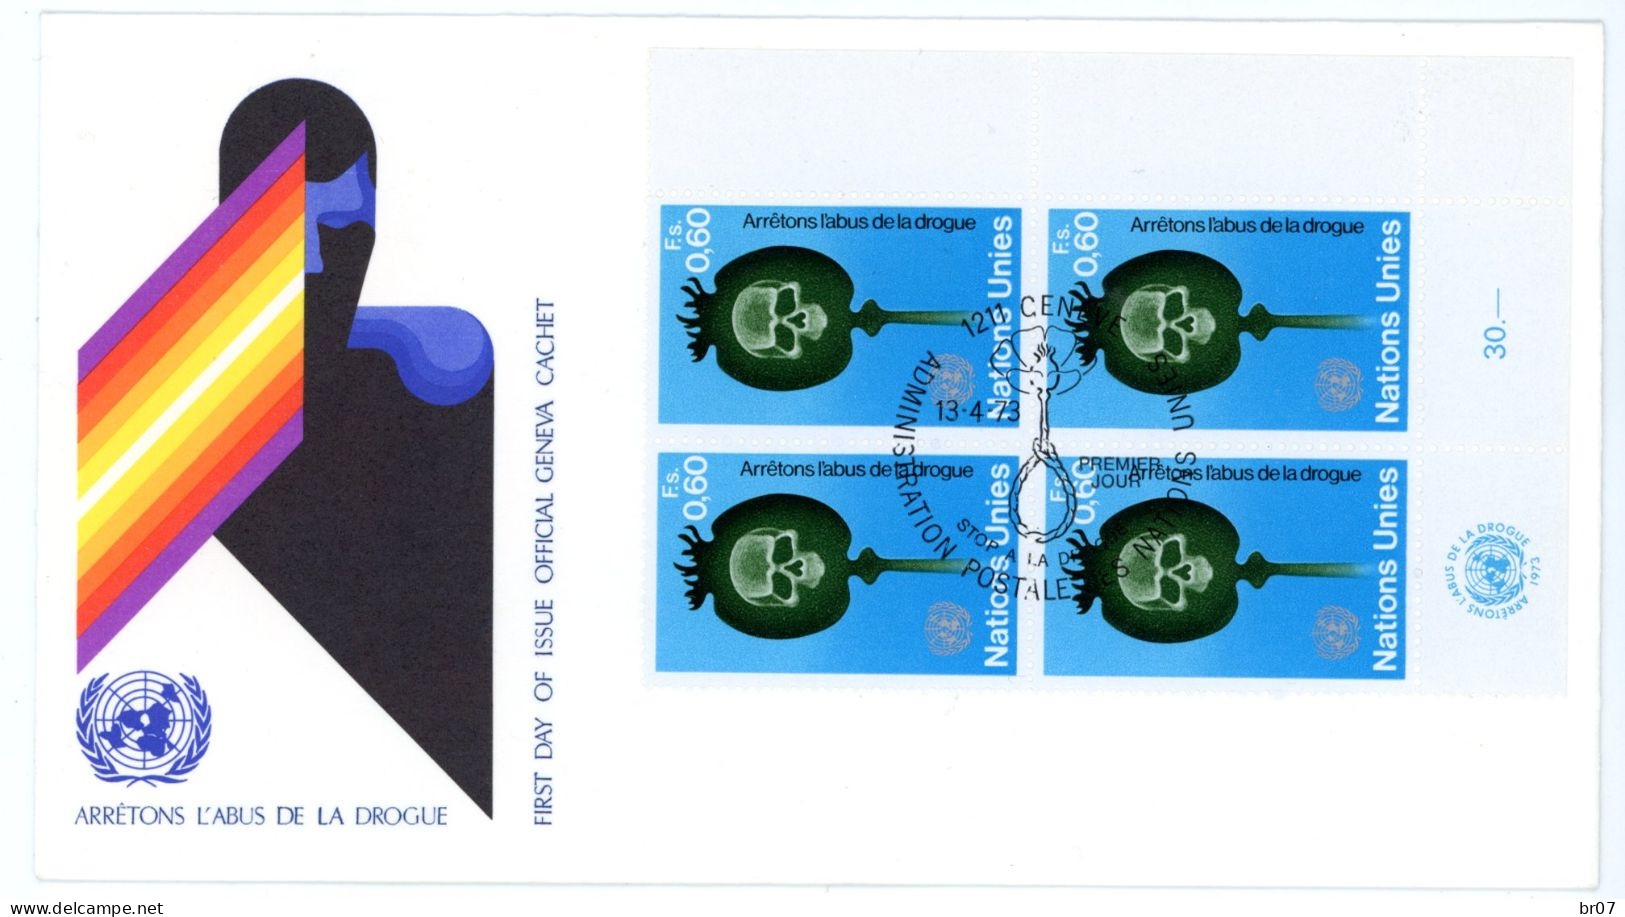 NATIONS UNIES GENEVE +30 X LETTRE PREMIER JOUR & ENTIER 1966 1972 SCANS INDIVIDUELS POIDS 135g AVANT EMBALLAGE - Covers & Documents